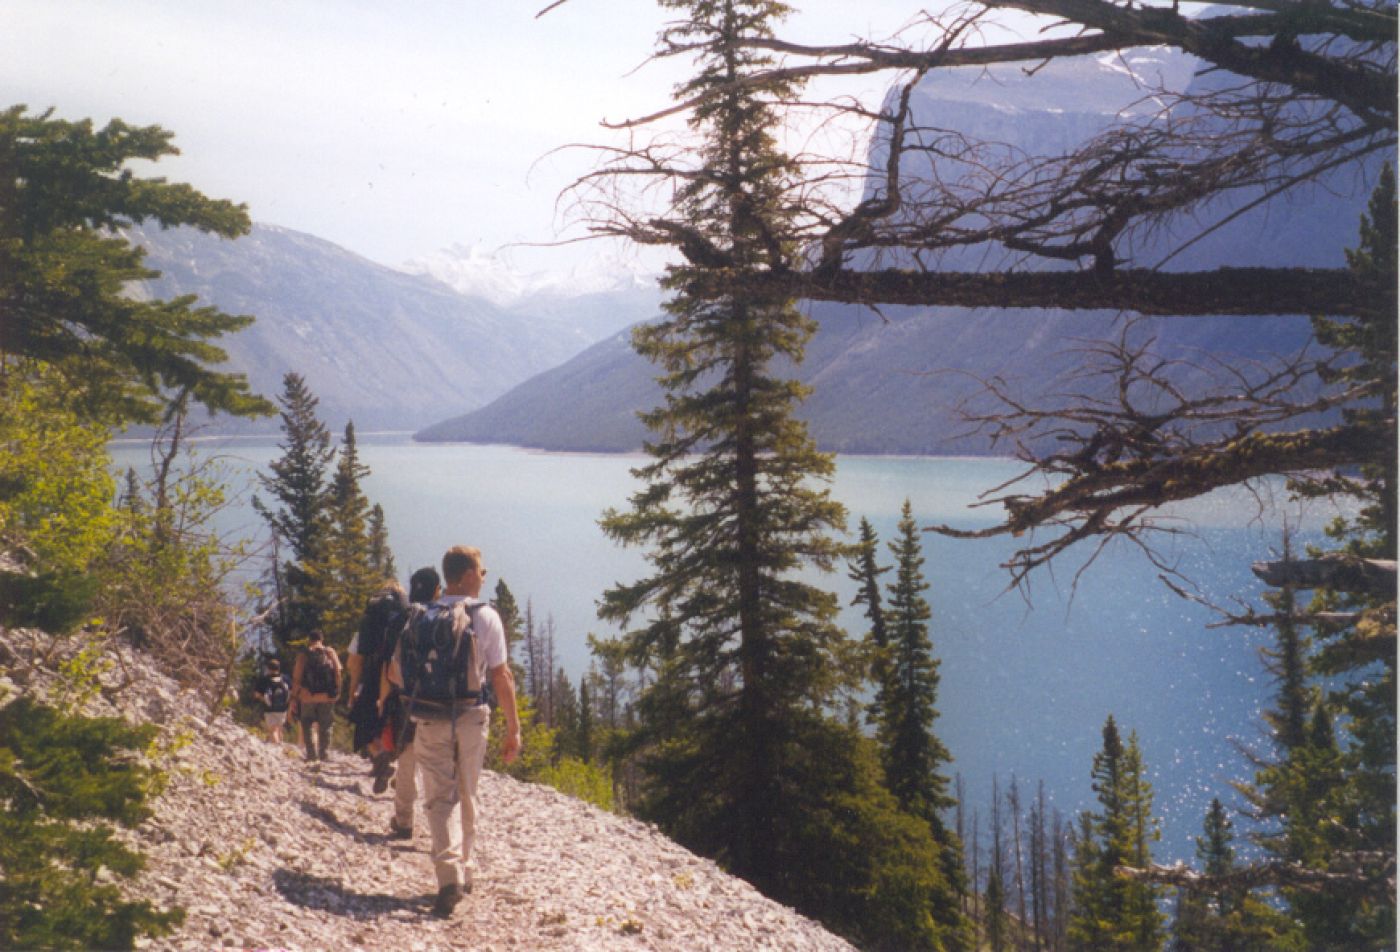 hiking at minnewanka lake near banff, canada | wandern am minnewanka see bei banff, rocky mountains, kanada